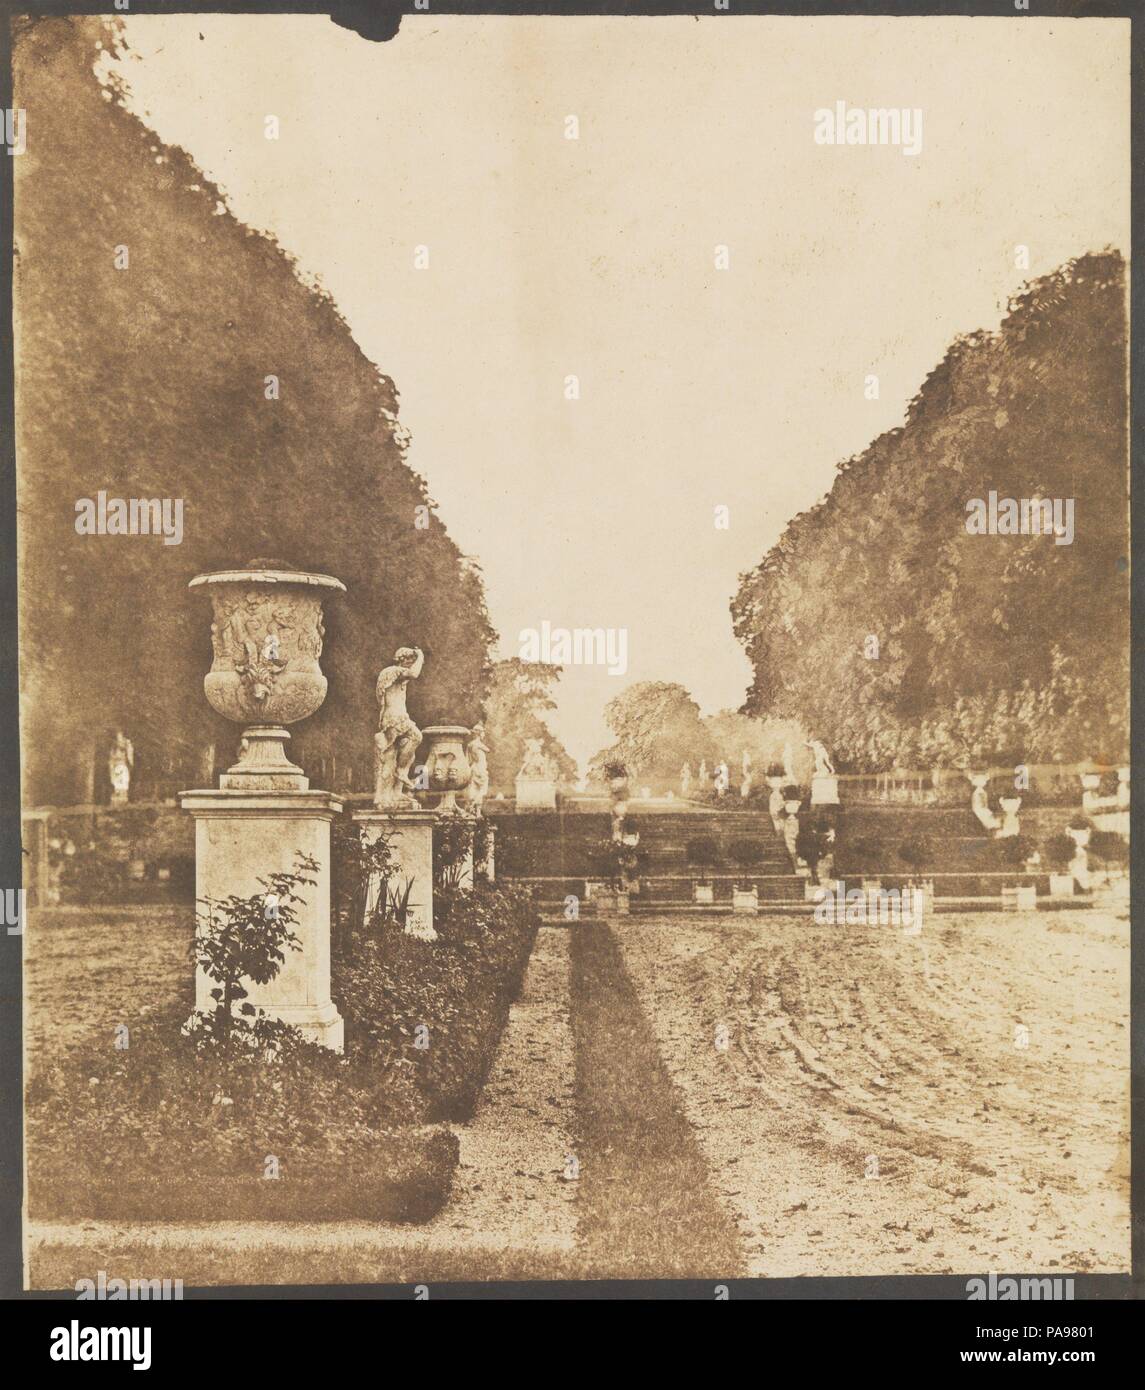 [Giardini di Saint-Cloud]. Artista: Henri Victor Regnault (Francese, 1810-1878). Dimensioni: Immagine: 16 1/8 × 14 1/16 in. (41 × 35,7 cm) foglio: 19 a. × 15 3/16 in. (48,3 × 38,5 cm). Data: prima del 1855. Un famoso fisico e inizio sperimentatore con il processo fotografico inventato da Talbot, Victor Regnault era una macchina motrice in francese antico fotografia. Con Delacroix, tra gli altri, ha fondato la Société Héliographique nel 1851, è stato il presidente fondatore della successiva della Société Française de Photographie nel 1854, e come direttore di Sèvres fabbrica di porcellana dal 1852 al 1871 realizzata una fotografia Foto Stock